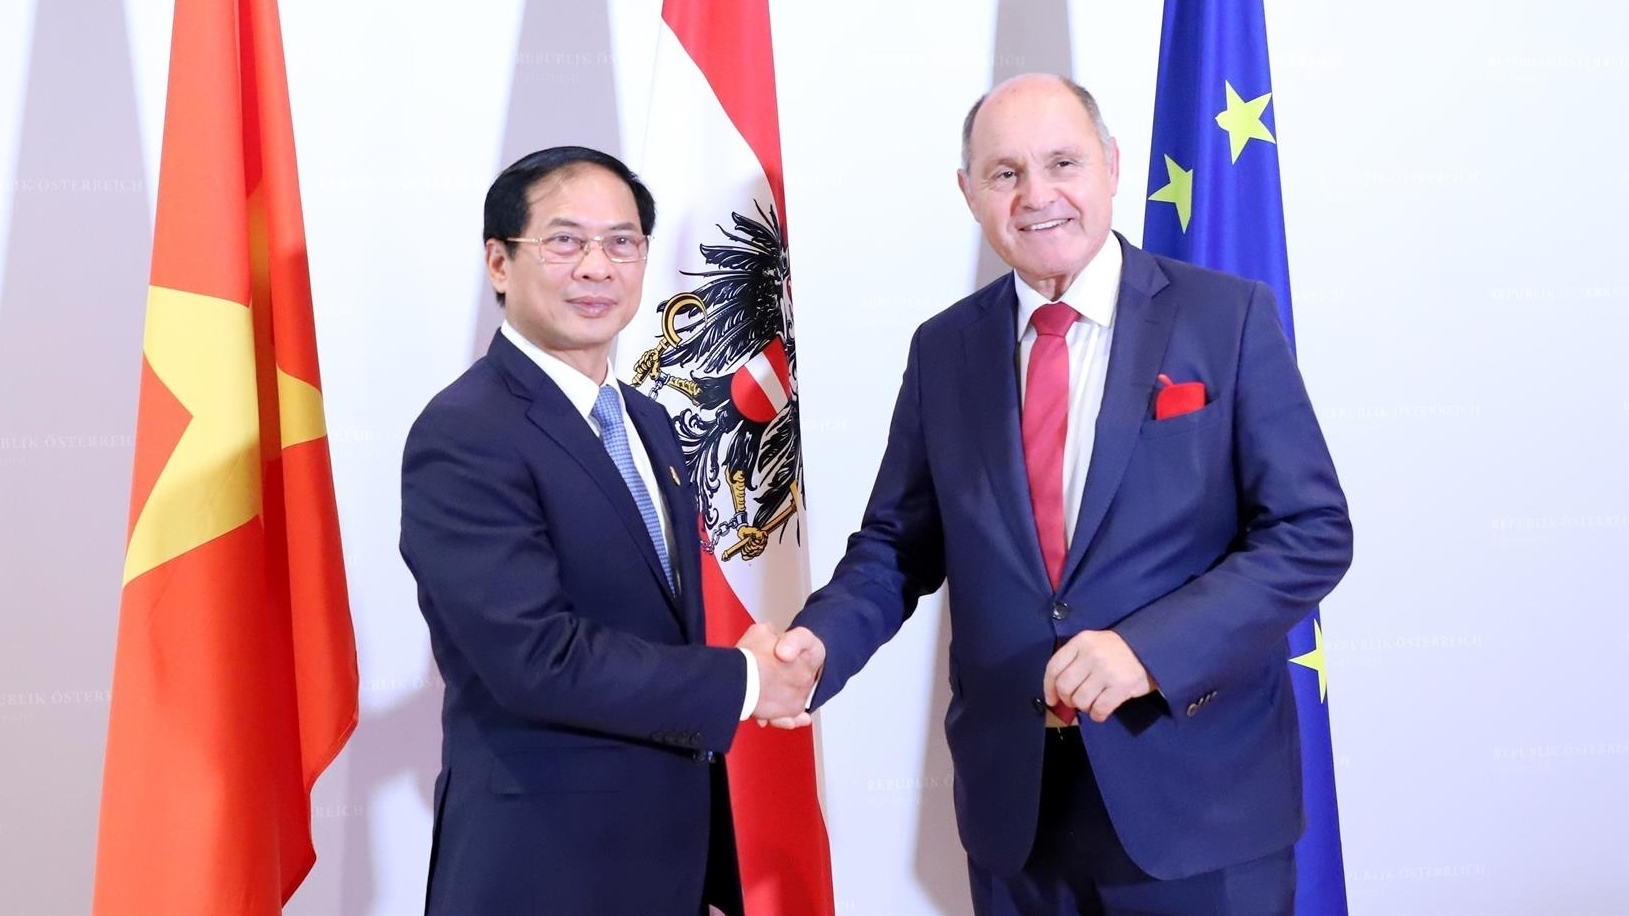 加强越南与奥地利的友好合作关系